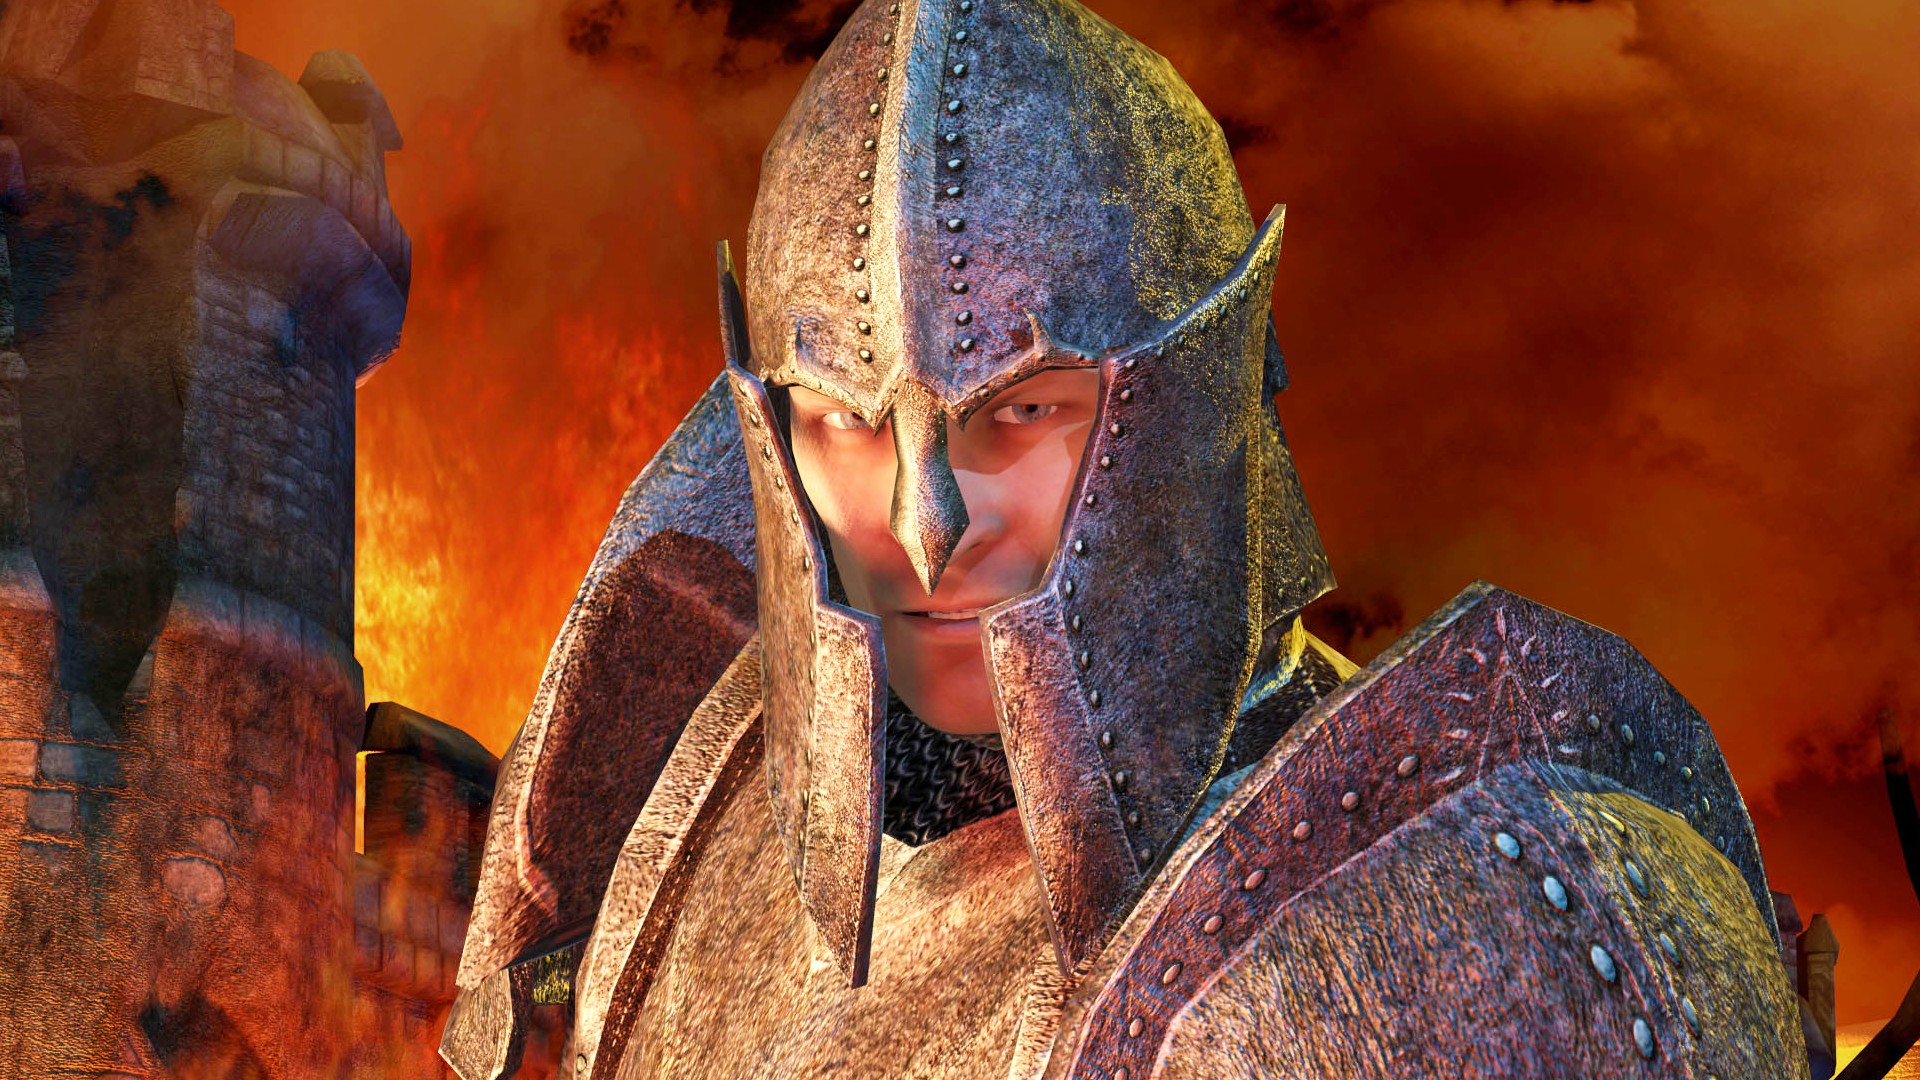 Elder Scrolls Oblivion remake, built in Skyrim, gets release date